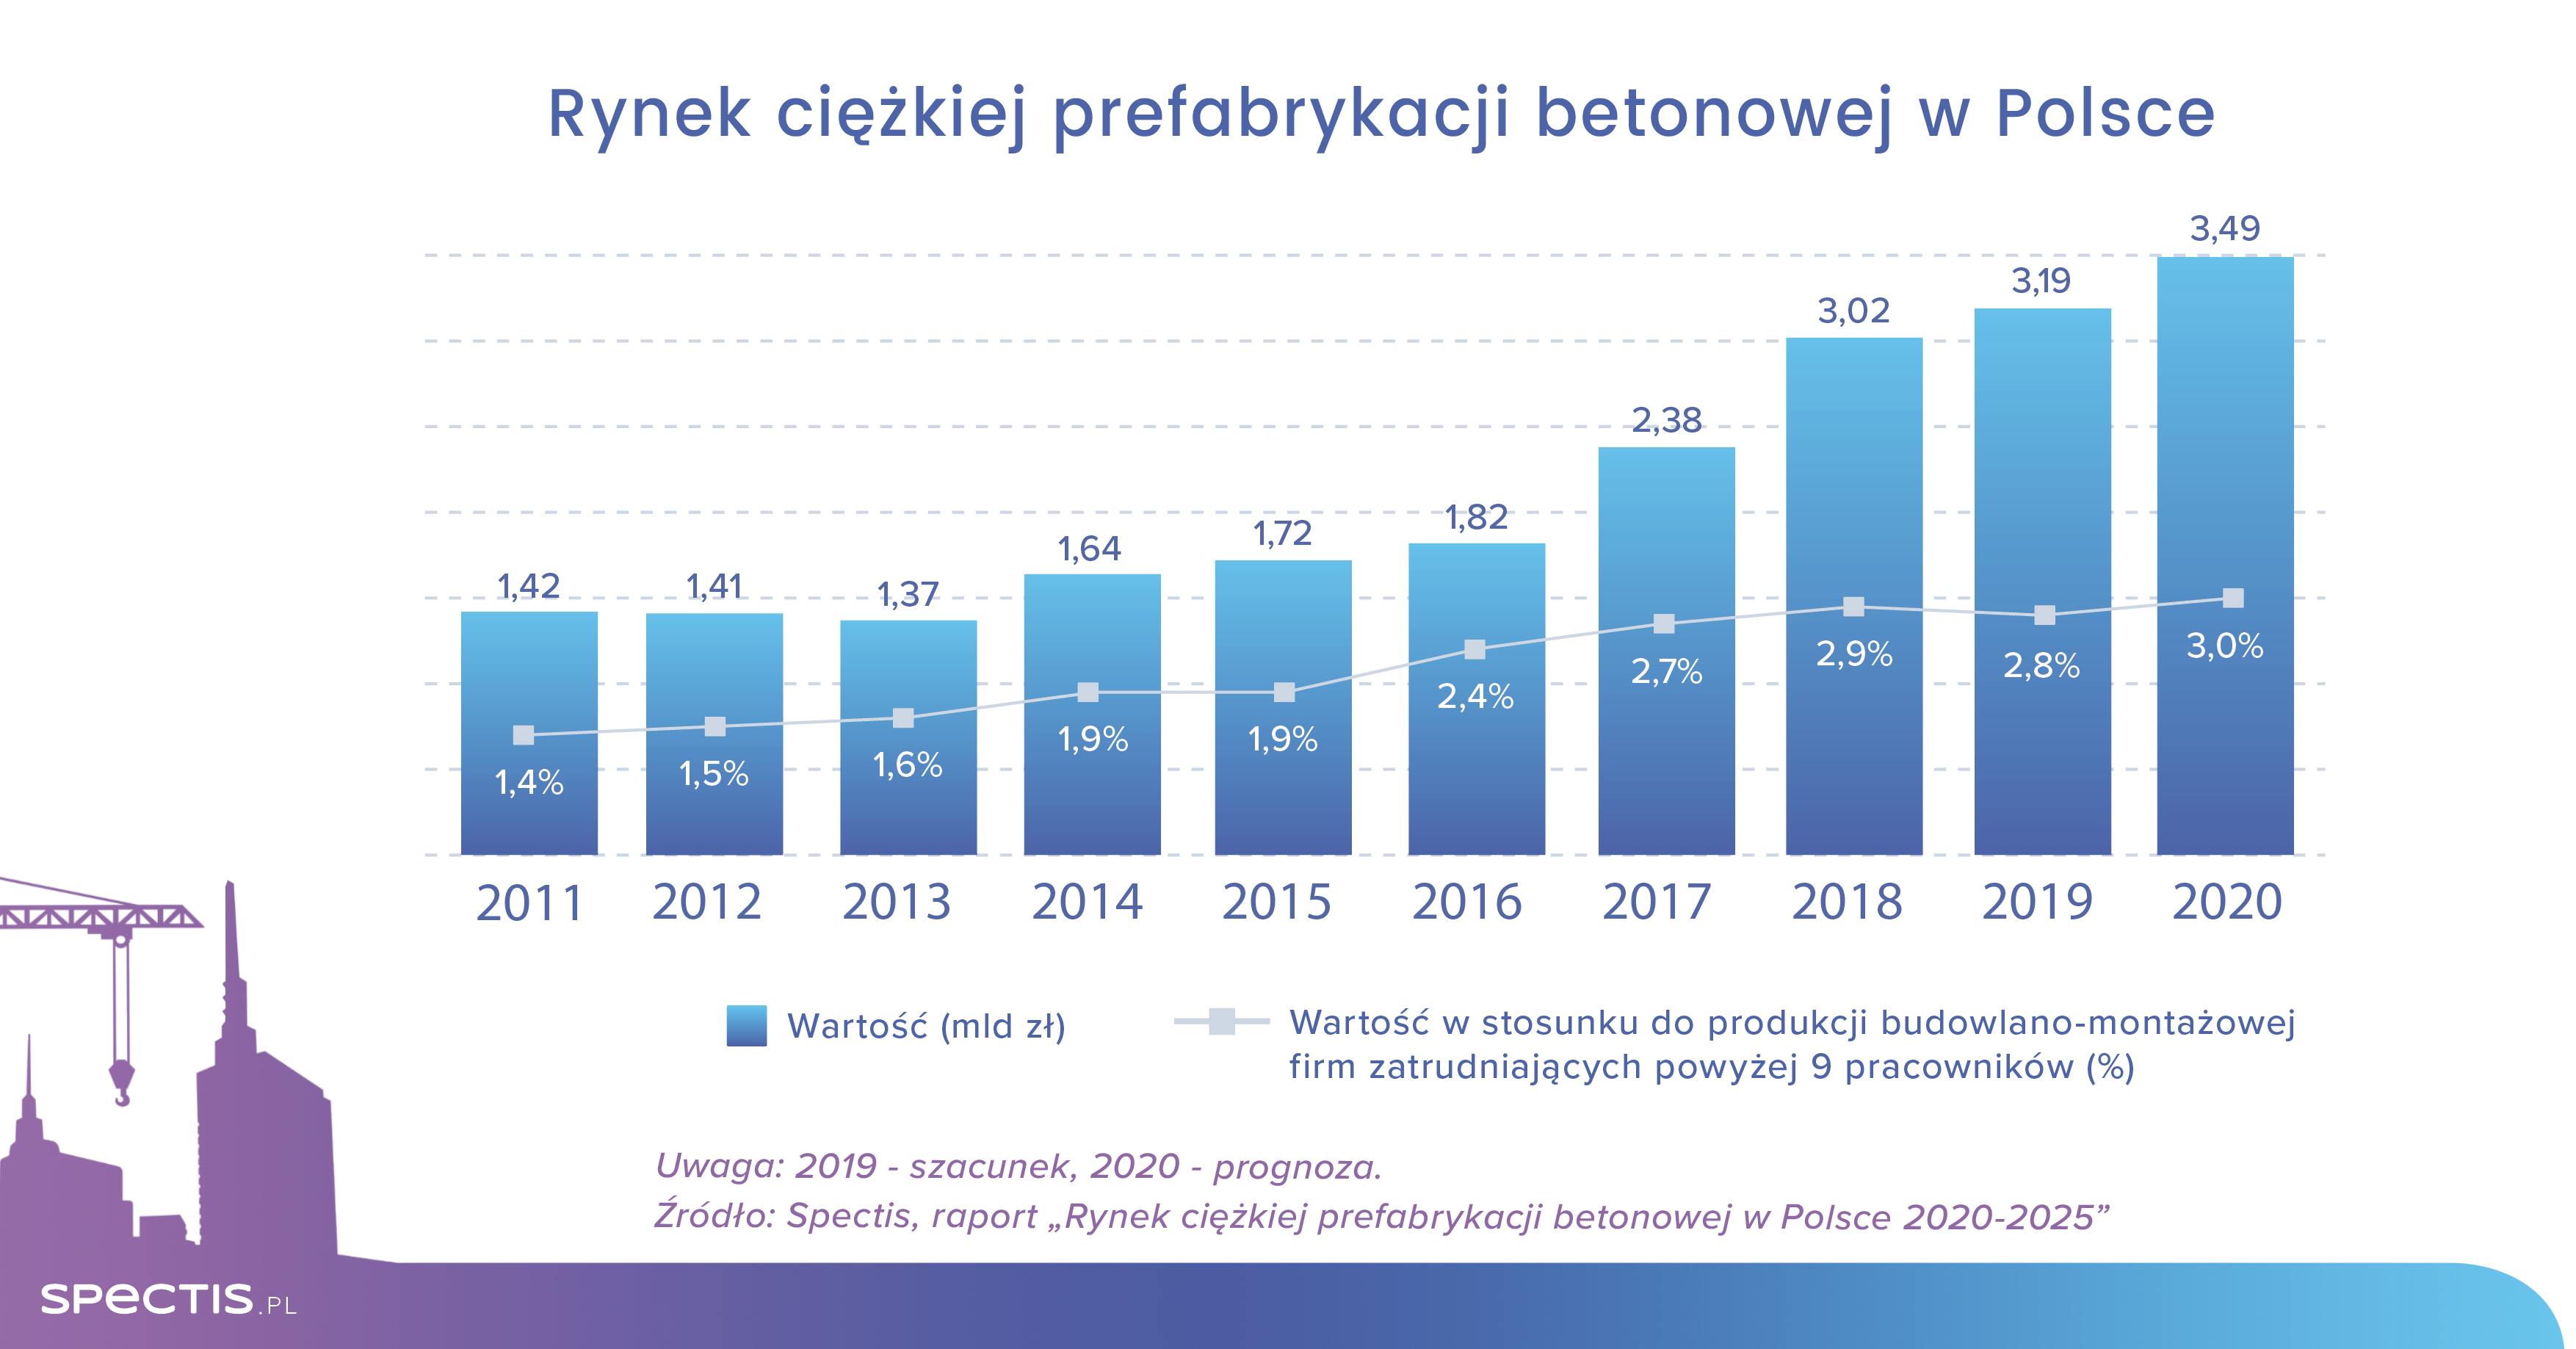 Wartość rynku ciężkiej prefabrykacji betonowej w Polsce sięgnie 3,5 mld zł w 2020 r.